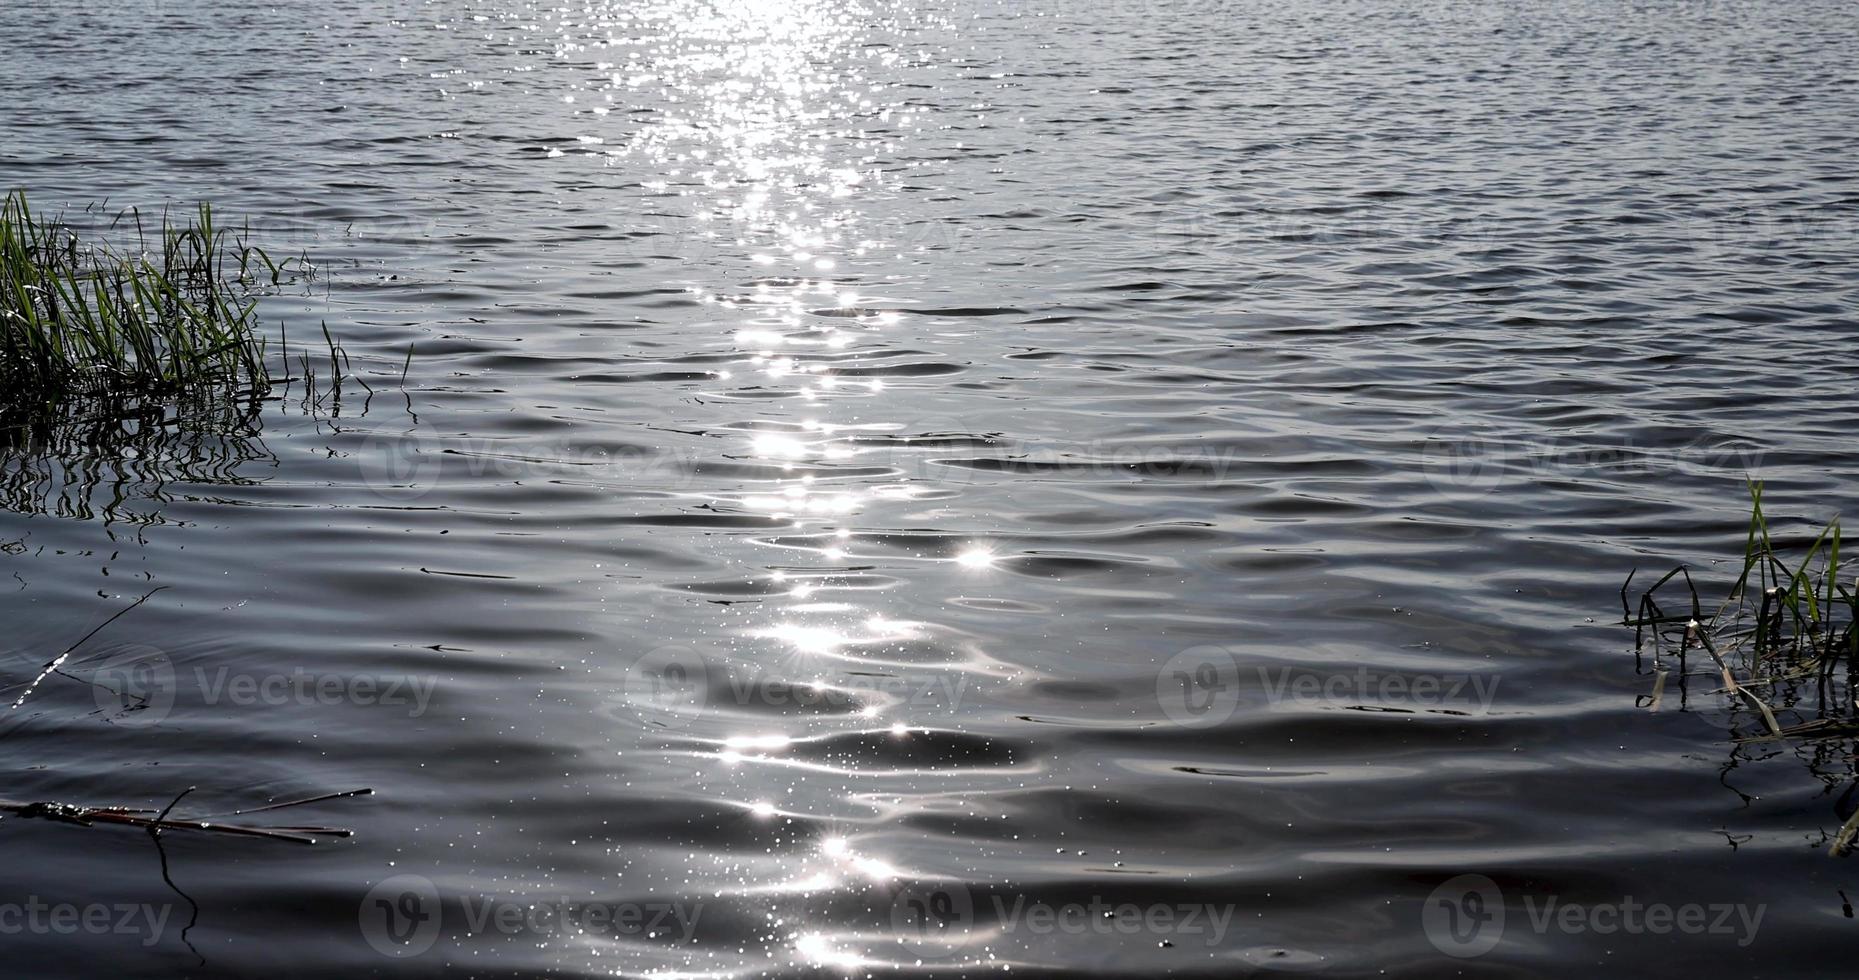 grelles sonnenlicht auf der oberfläche des seewassers mit kleinen wellen foto